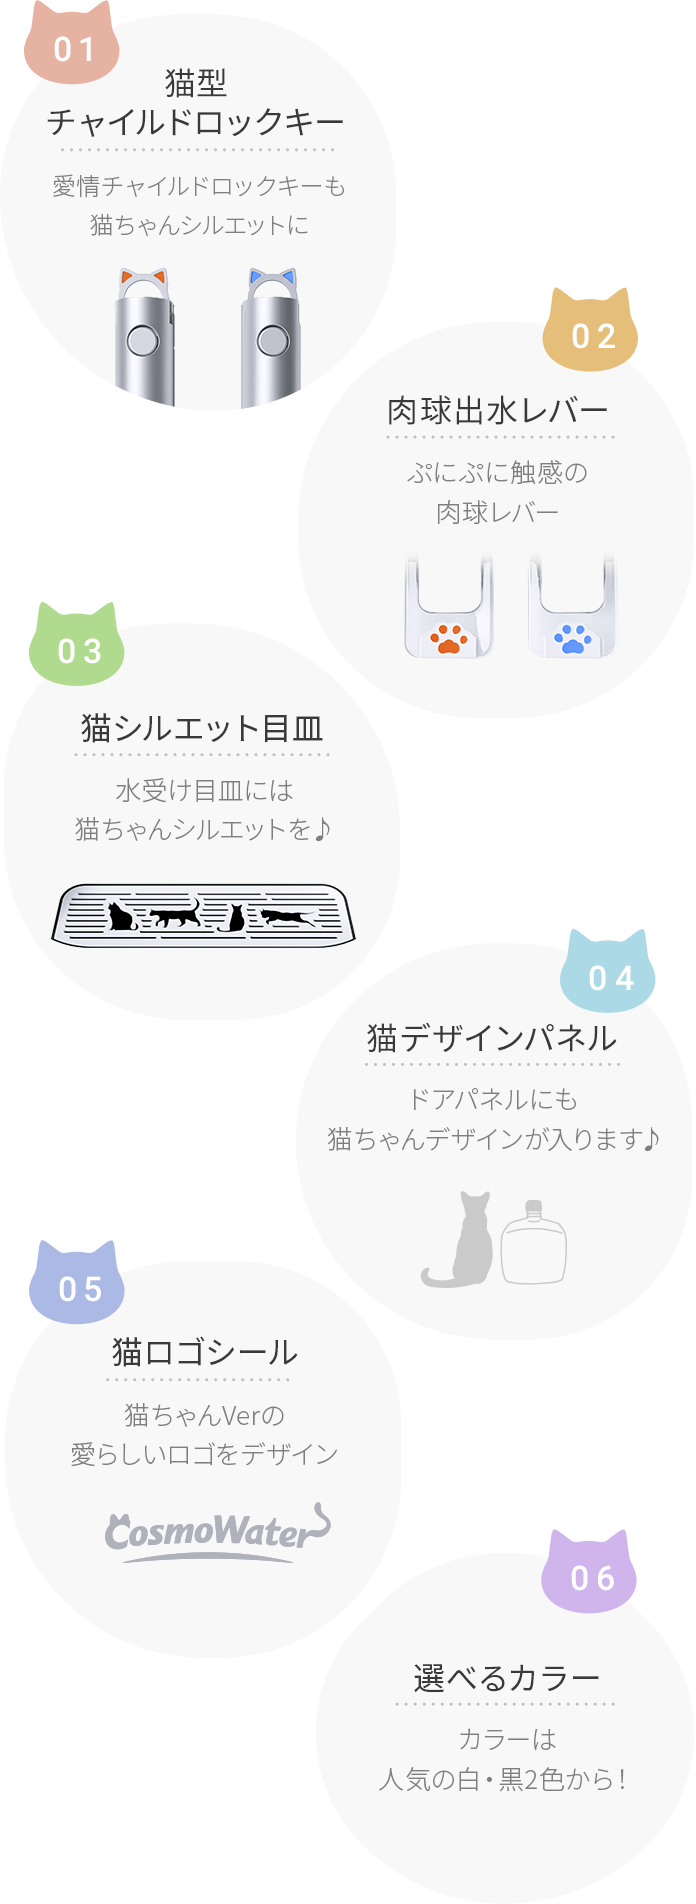 [01]猫型チャイルドロックキー 愛情チャイルドロックキーも猫ちゃんシルエットに [02]肉球出水レバー ぷにぷに触感の肉球レバー [03]猫シルエット目皿 水受け目皿には猫ちゃんシルエットを♪ [04]猫デザインパネル ドアパネルにも猫ちゃんデザインが入ります♪ [05]猫ロゴシール 猫ちゃんVerの愛らしいロゴをデザイン [06]選べるカラー カラーは人気の白・黒2色から！